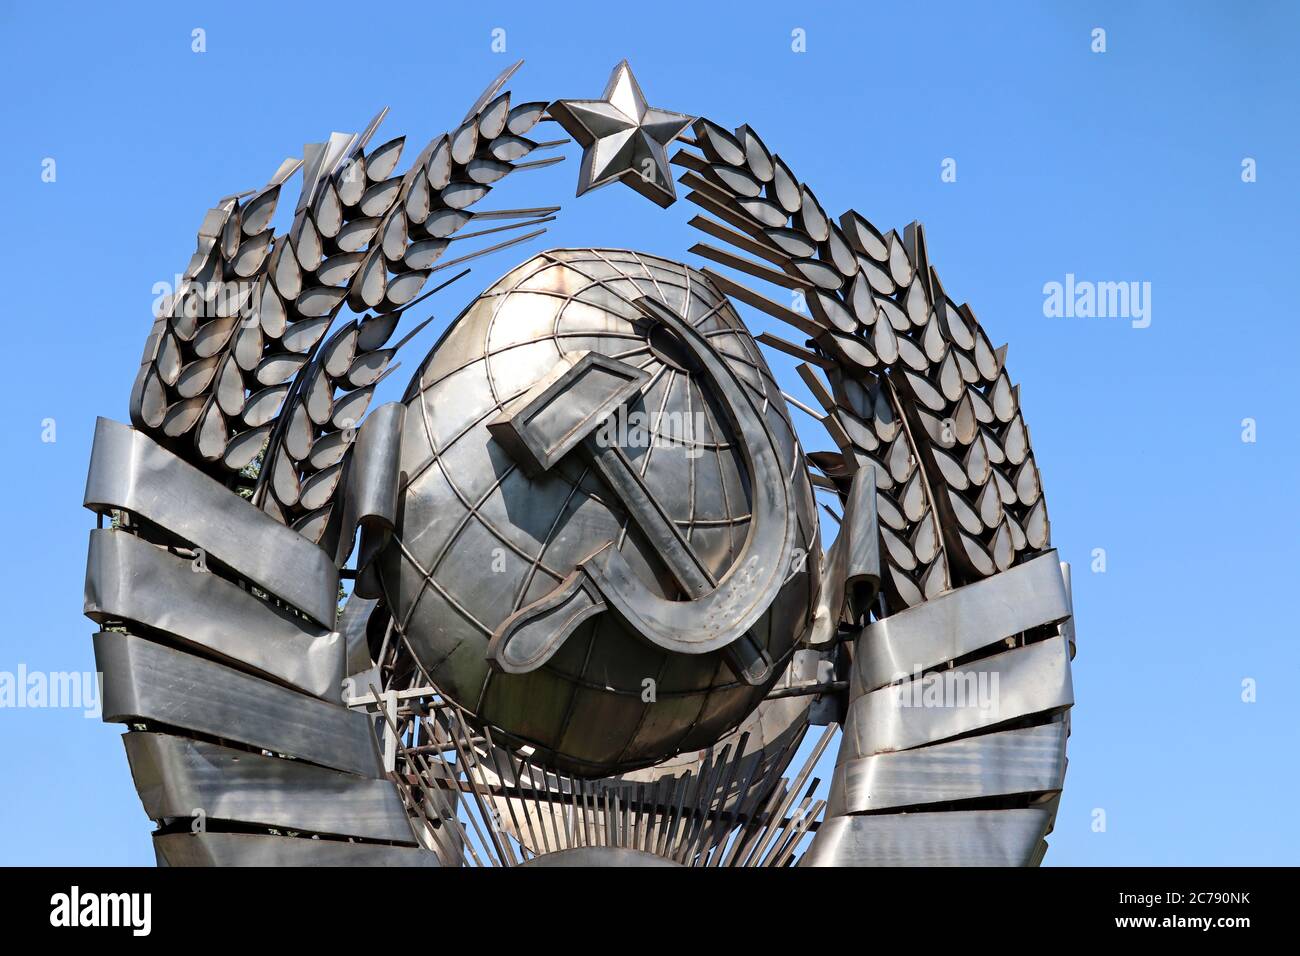 Wappen der UdSSR, kommunistisches und sozialistisches Symbol. Metall sowjetischen Emblem auf blauen Himmel Hintergrund Stockfoto